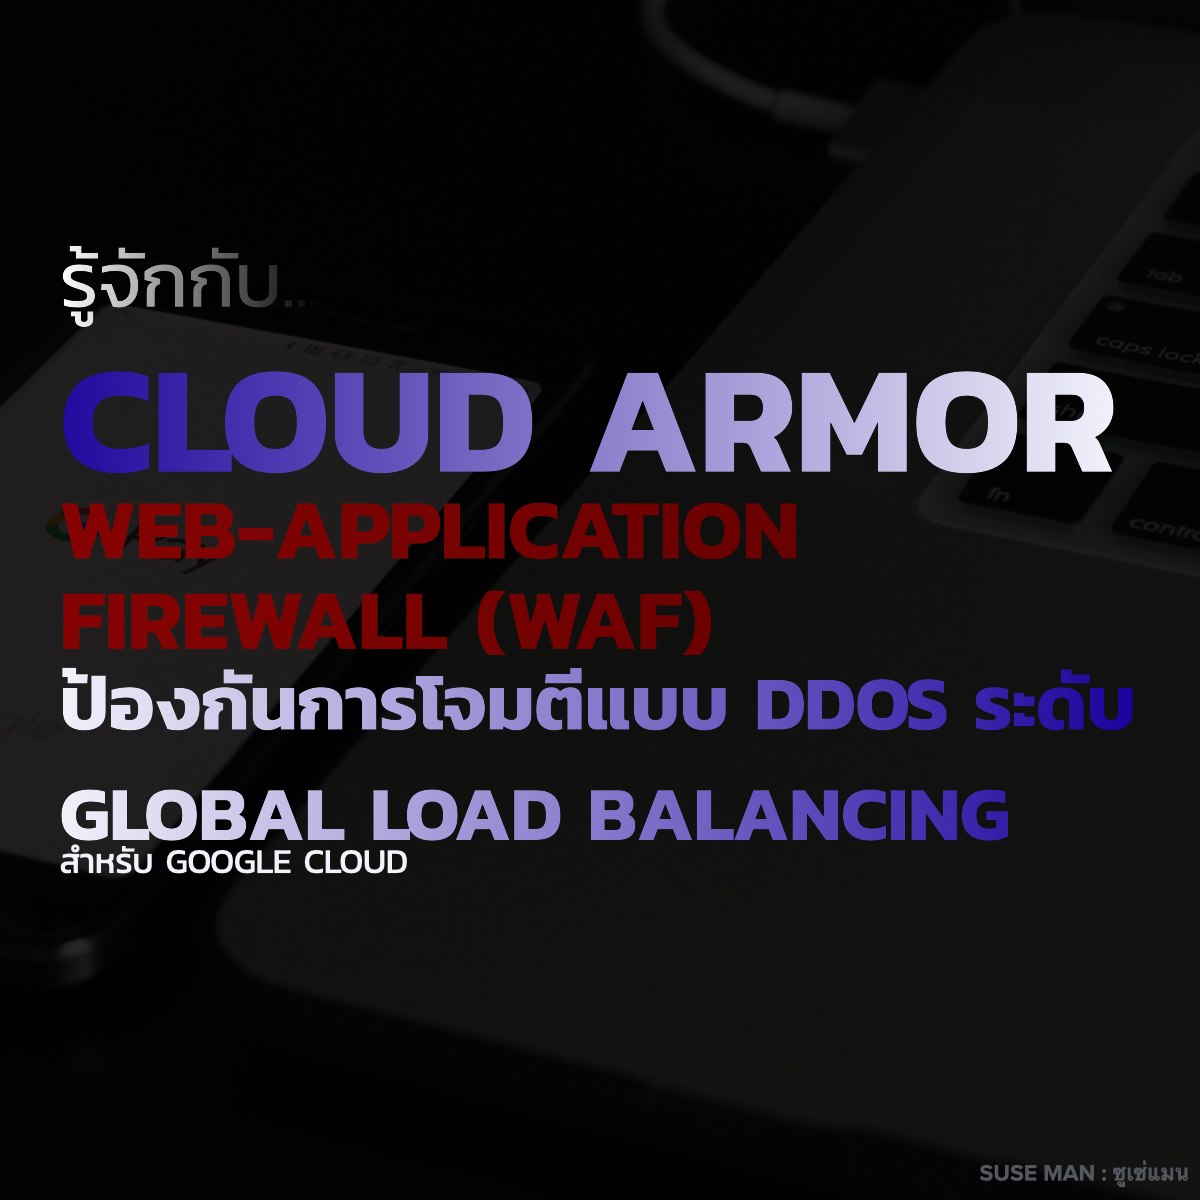 Google Cloud Armor